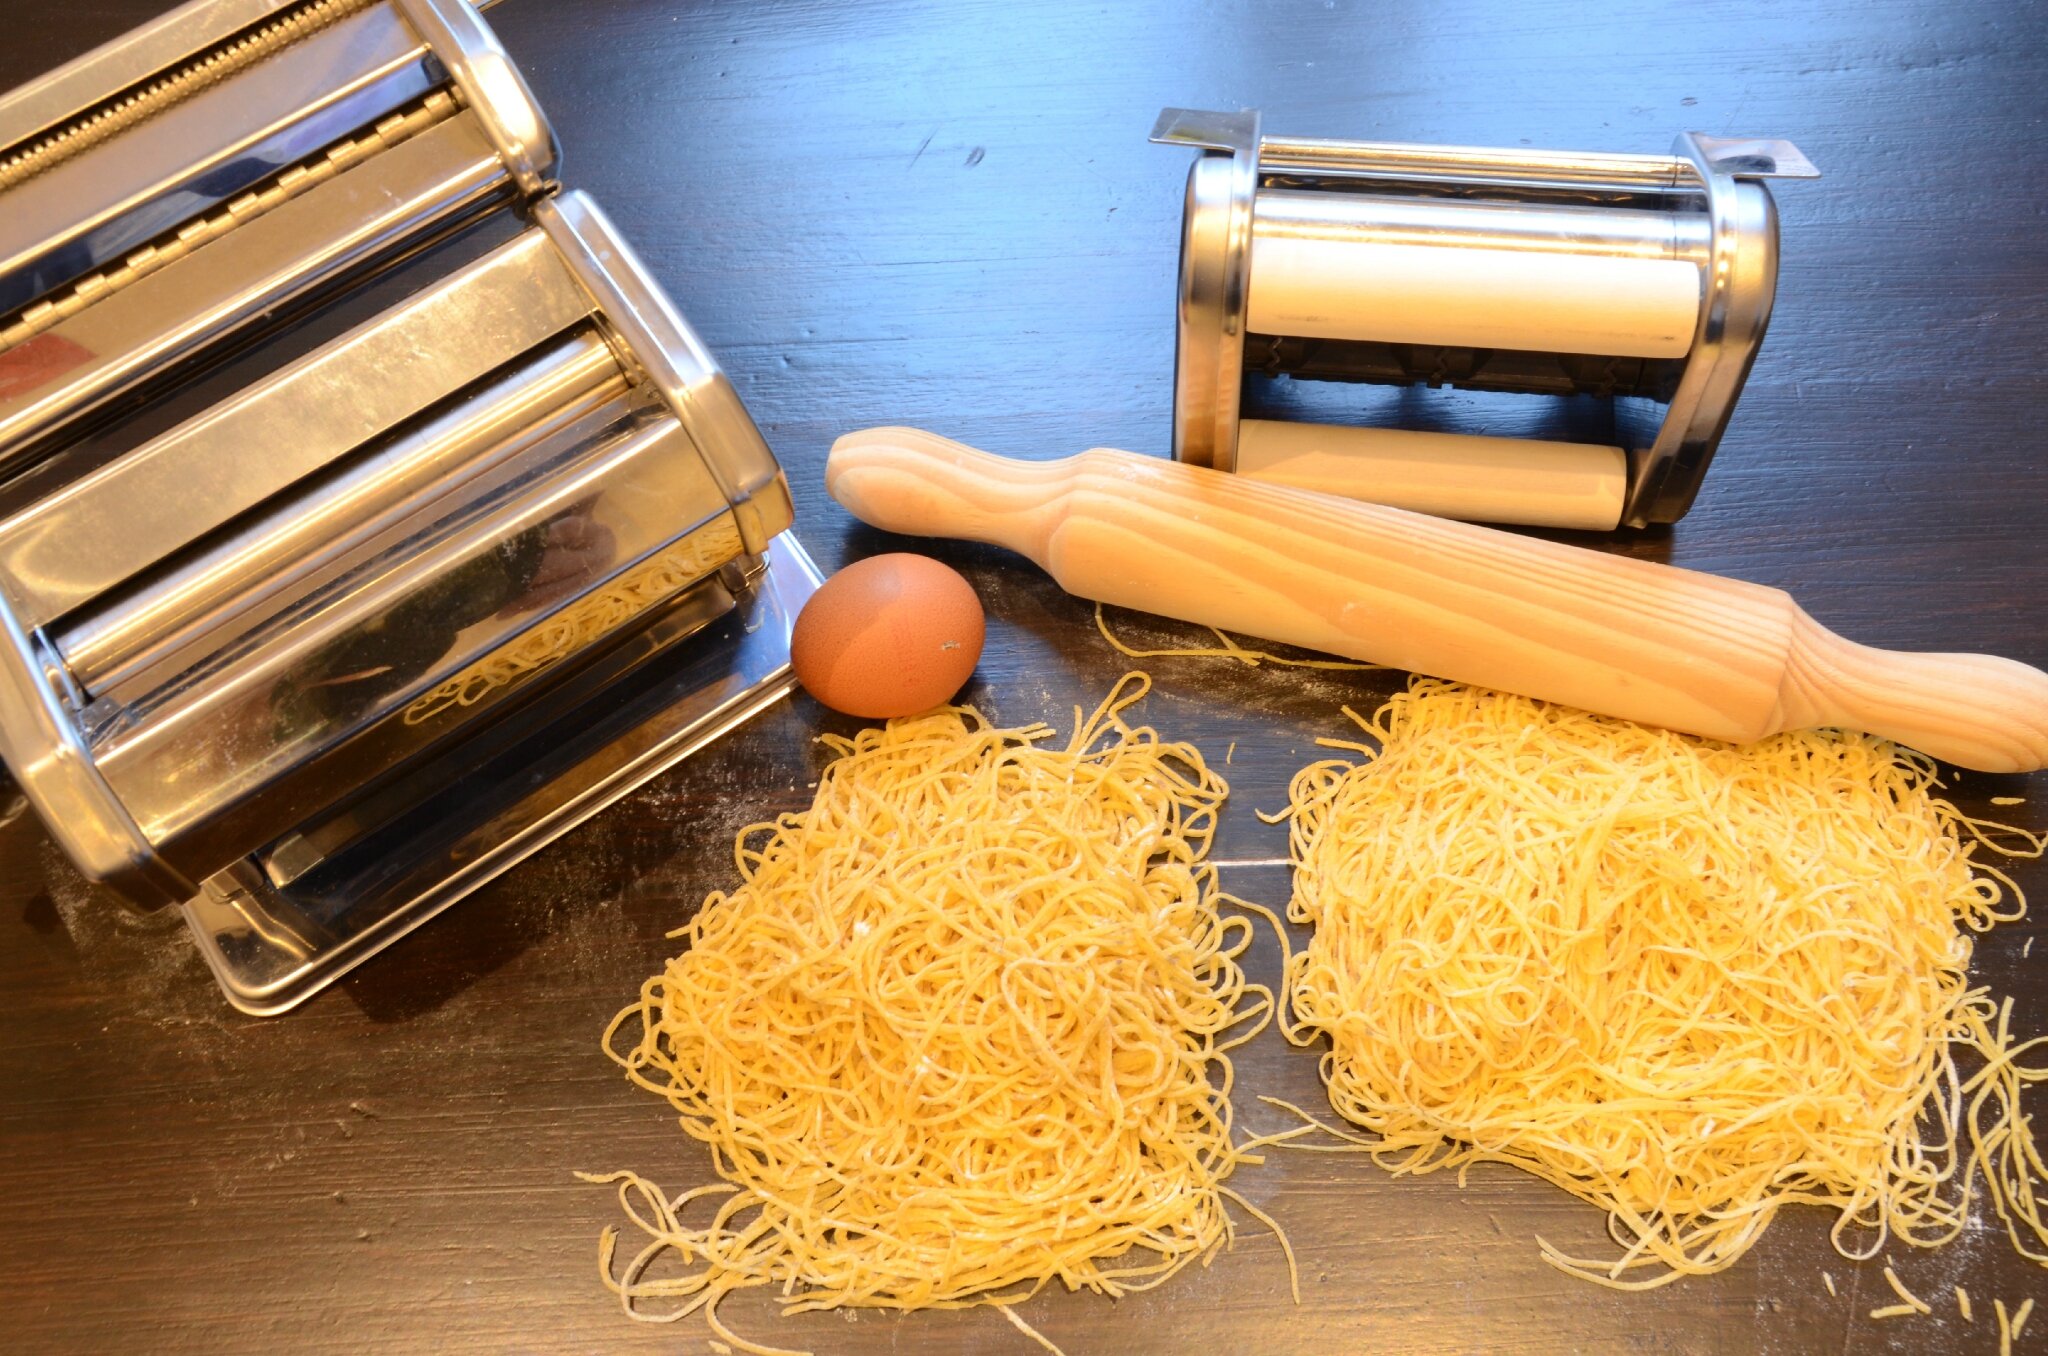 Des pâtes fraîches maison avec le Pasta Maker (et une recette